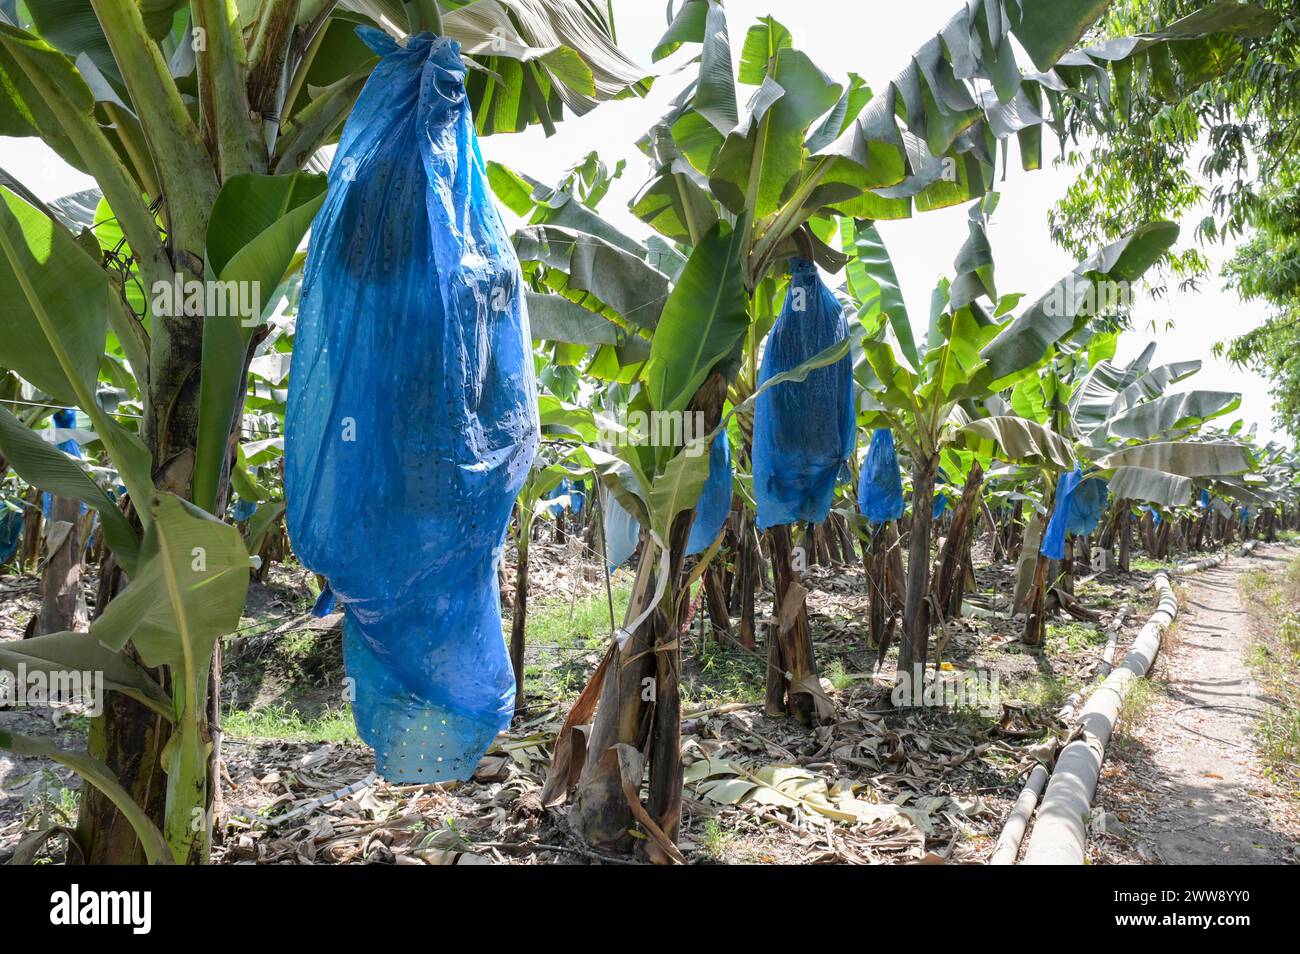 GHANA, Volta Region, französisches Eigentum Golden Exotics Ltd. Große Plantage für Bananenanbau für den Export , die Farm wird über Wasser aus Kanälen vom Volta Fluß bewässert / GHANA, Bananenanbau auf Plantagen der französischen Golden Exotics Ltd. Für den Export, die Farm wird über Wasser aus Kanälen vom Volta Fluß bewässert Stockfoto